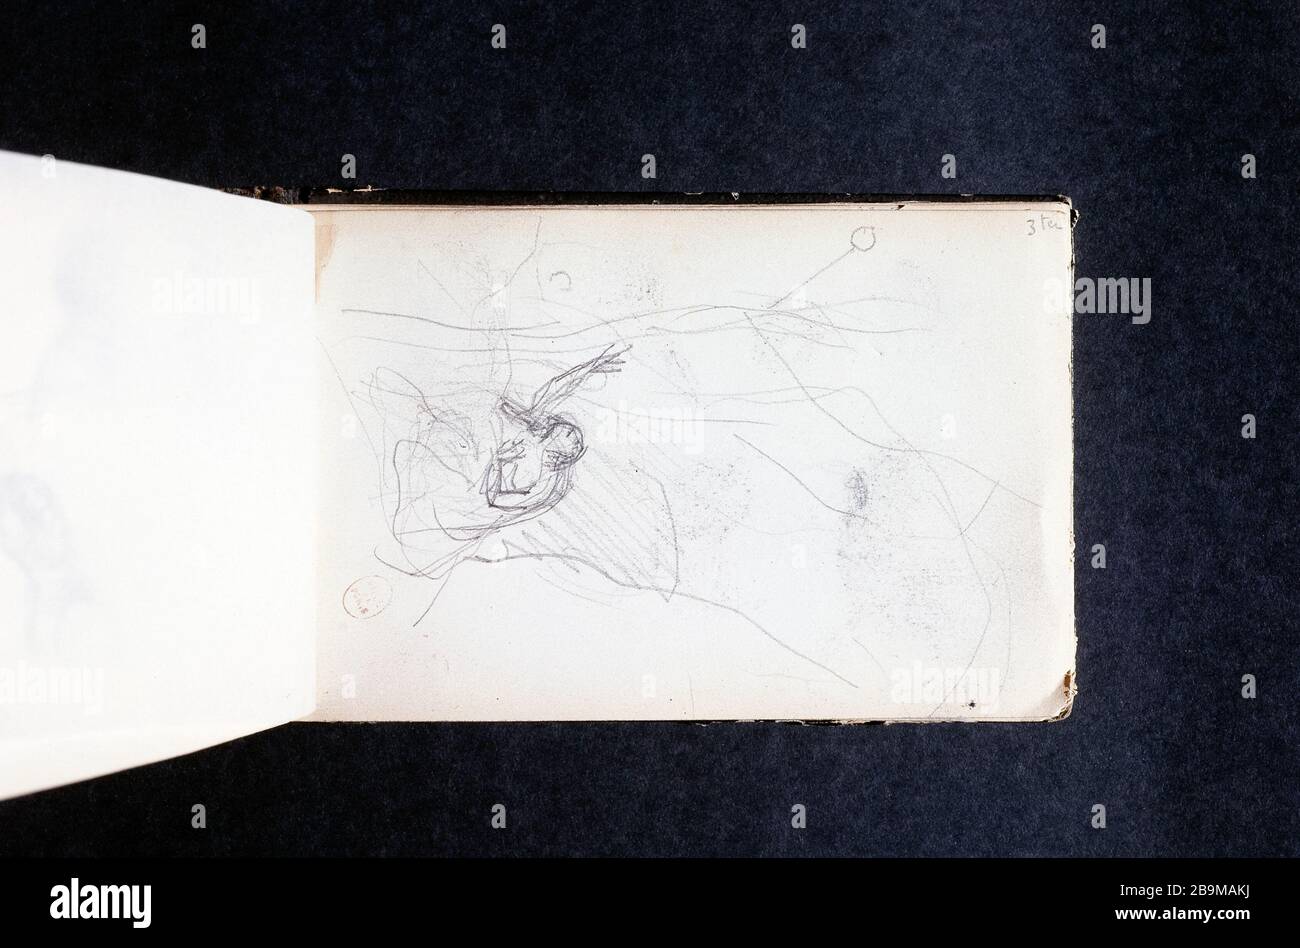 BOOK SKETCH DRAWING COROT: A FIGURE IN LANDSCAPE (PAGE 5) Jean-Baptiste Camille Corot (1796-1875). Carnet de croquis de dessins de Corot : une figure dans un paysage (page 5). Crayon. Paris, musée Carnavalet. Stock Photo